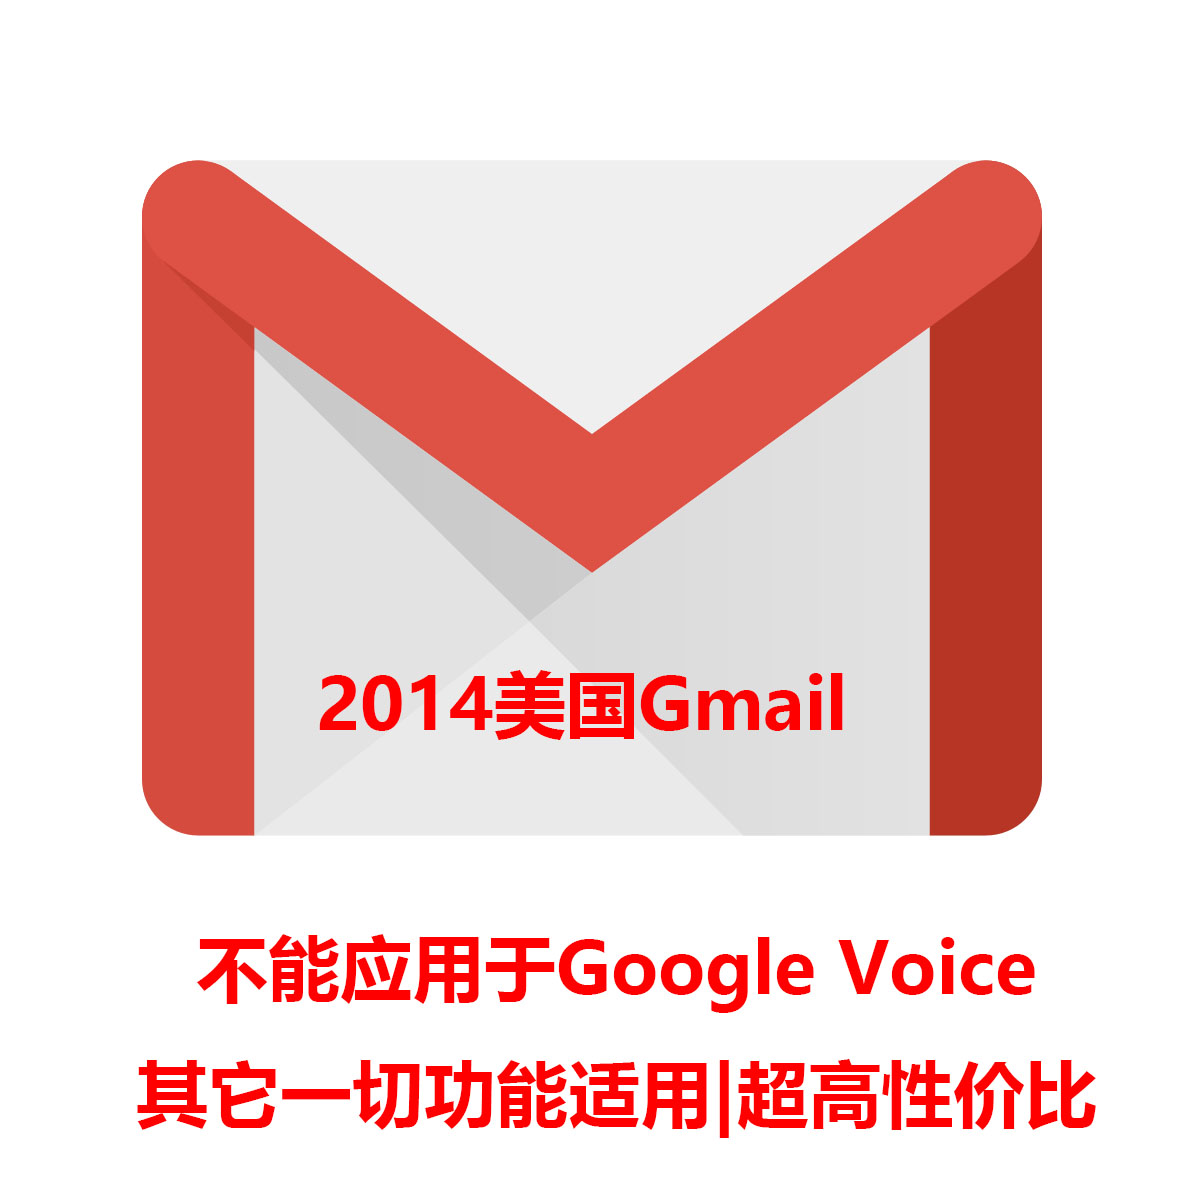 2014Gmail|美国地区|不能应用Google Voice|最高性价比